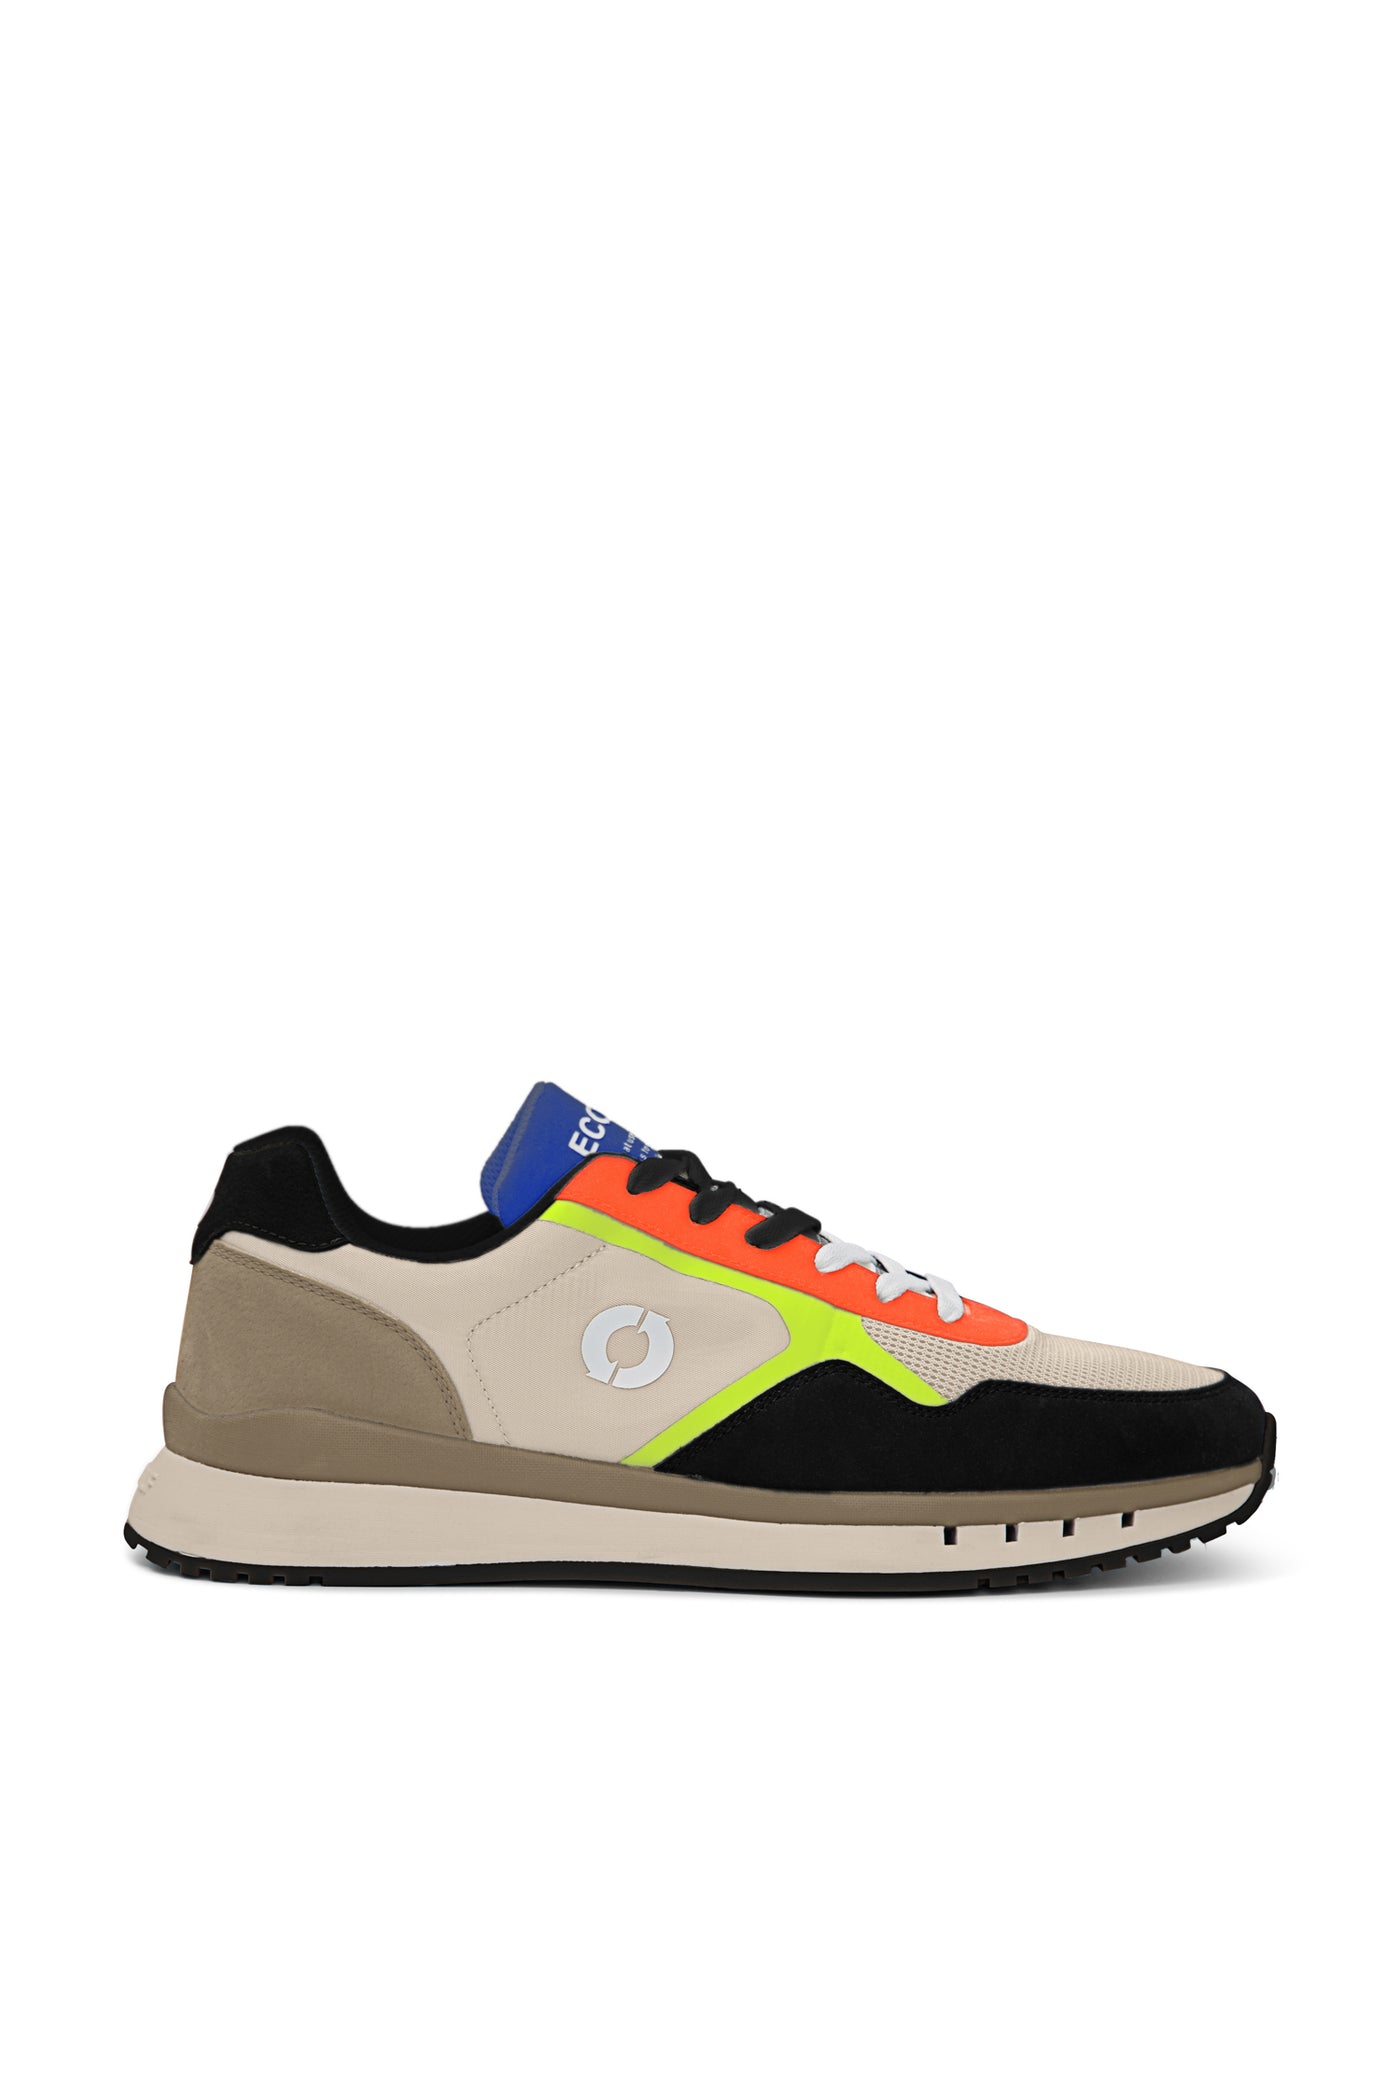 CERVINO Sneaker beige/orange